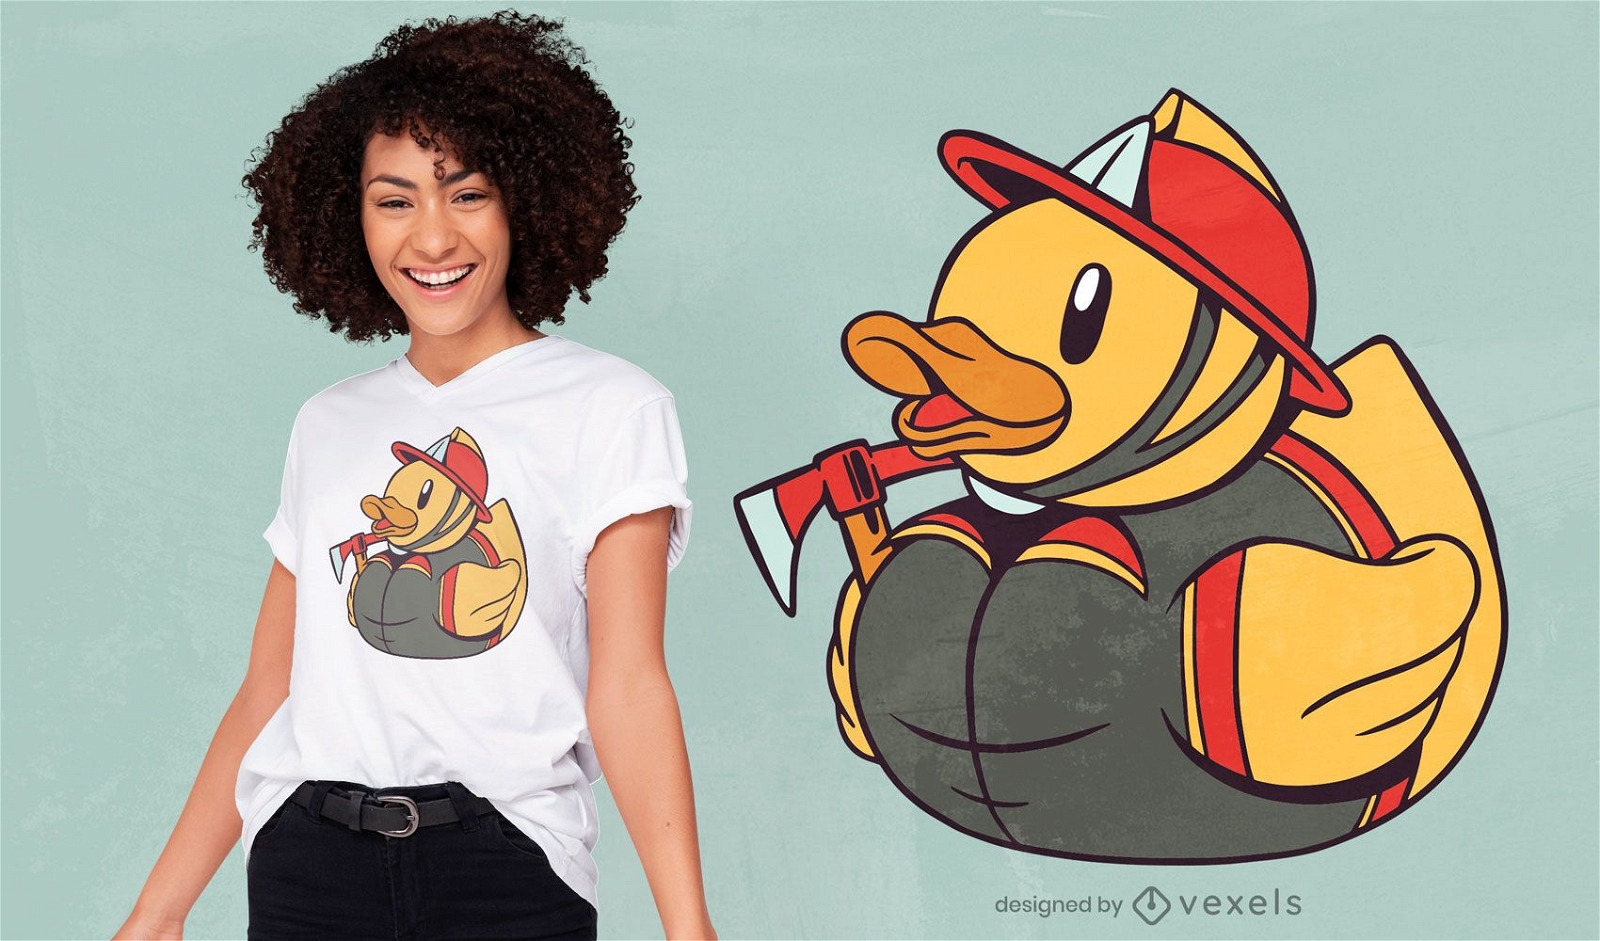 Rubber duck fireman t-shirt design